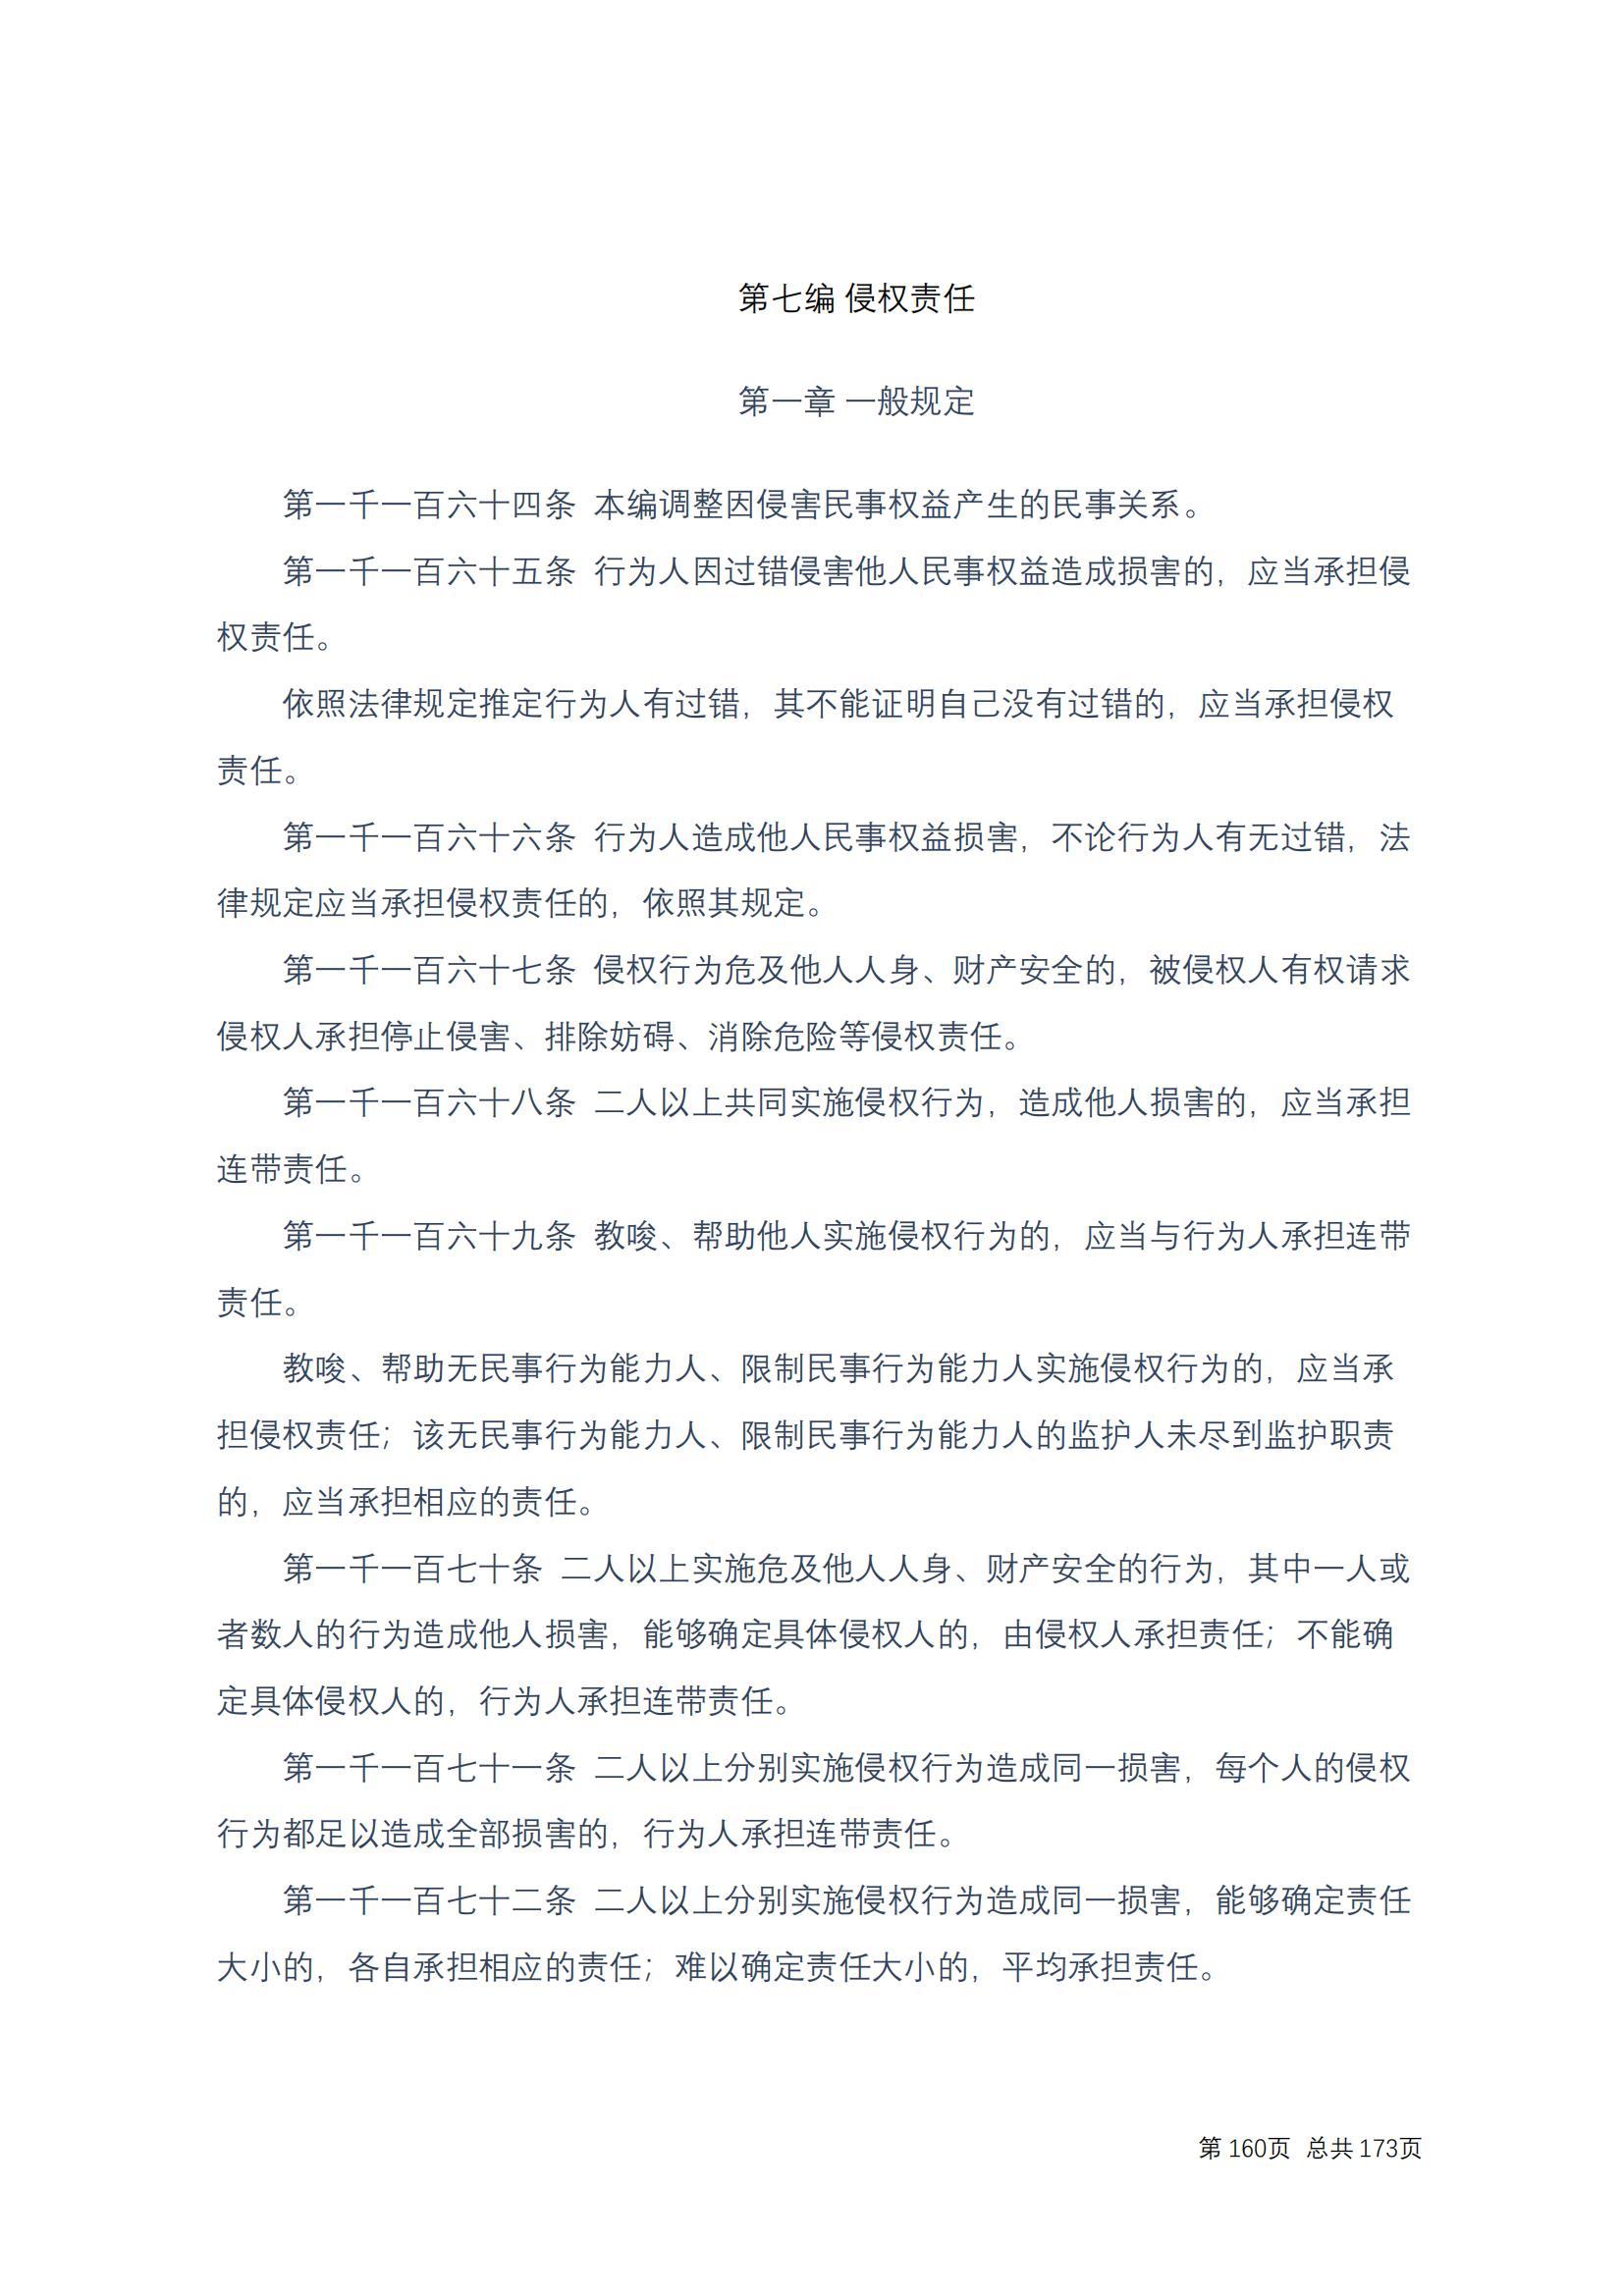 中华人民共和国民法典 修改过_159